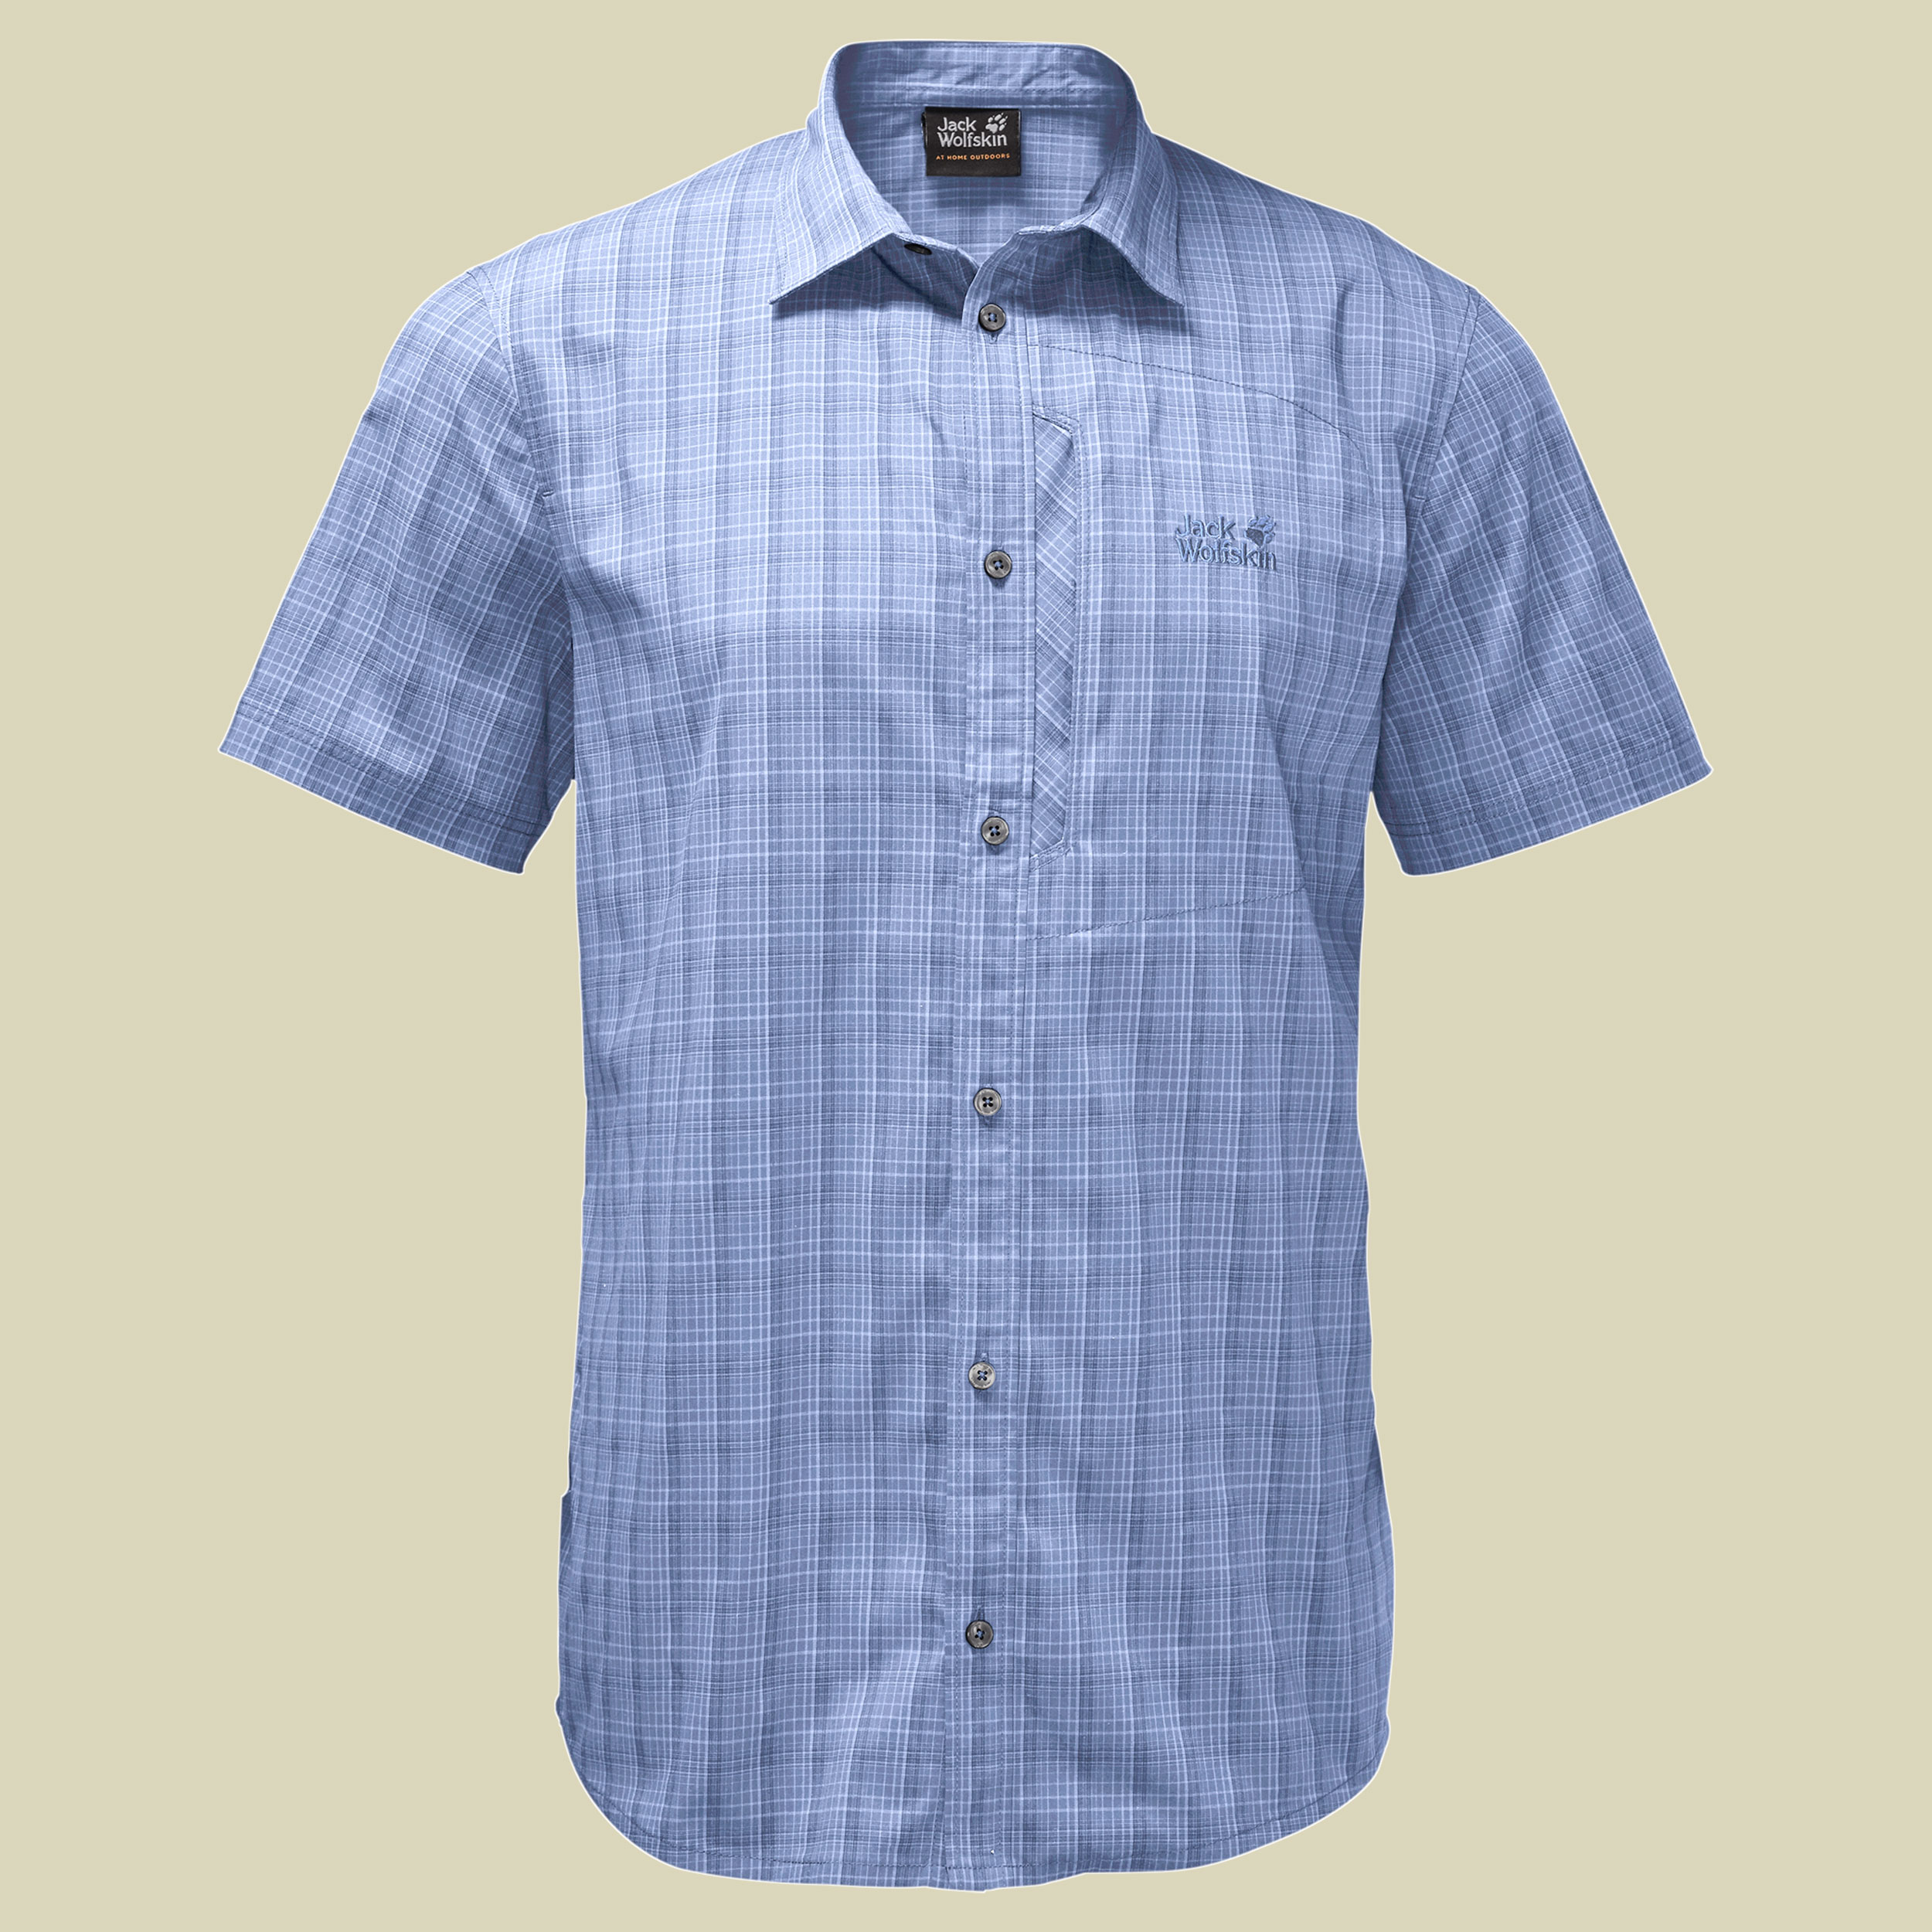 Rays Stretch Vent Shirt Men Größe M Farbe shirt blue checks